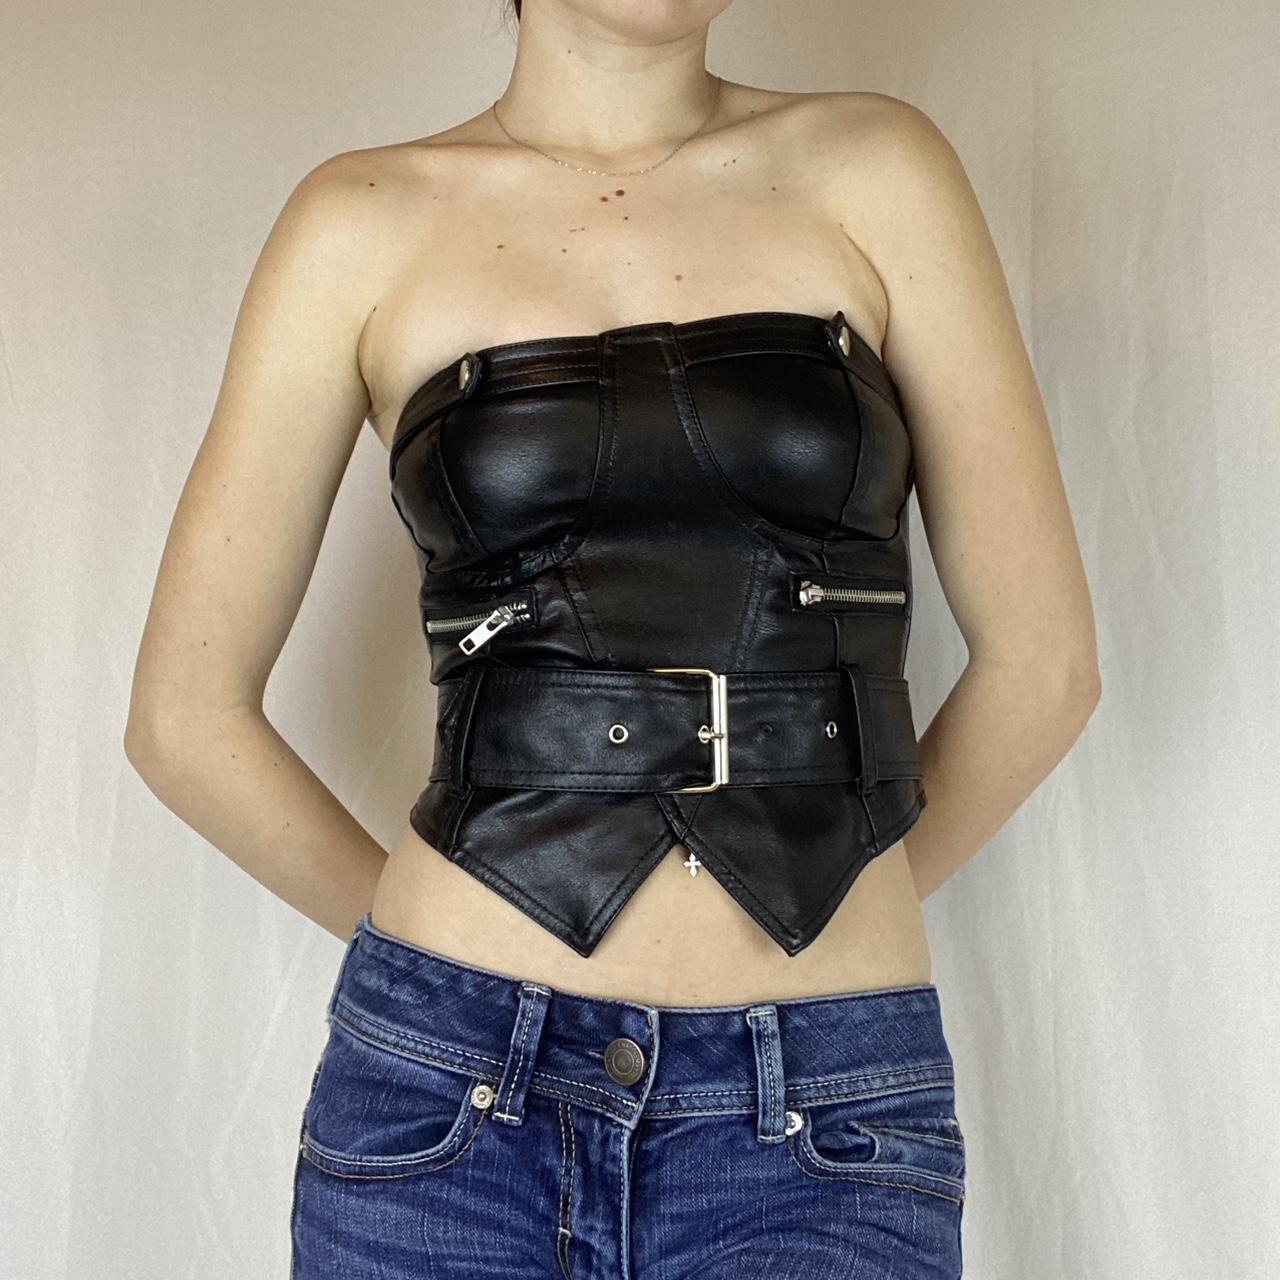 New underbust corset belt I made for spring :) : r/Depop